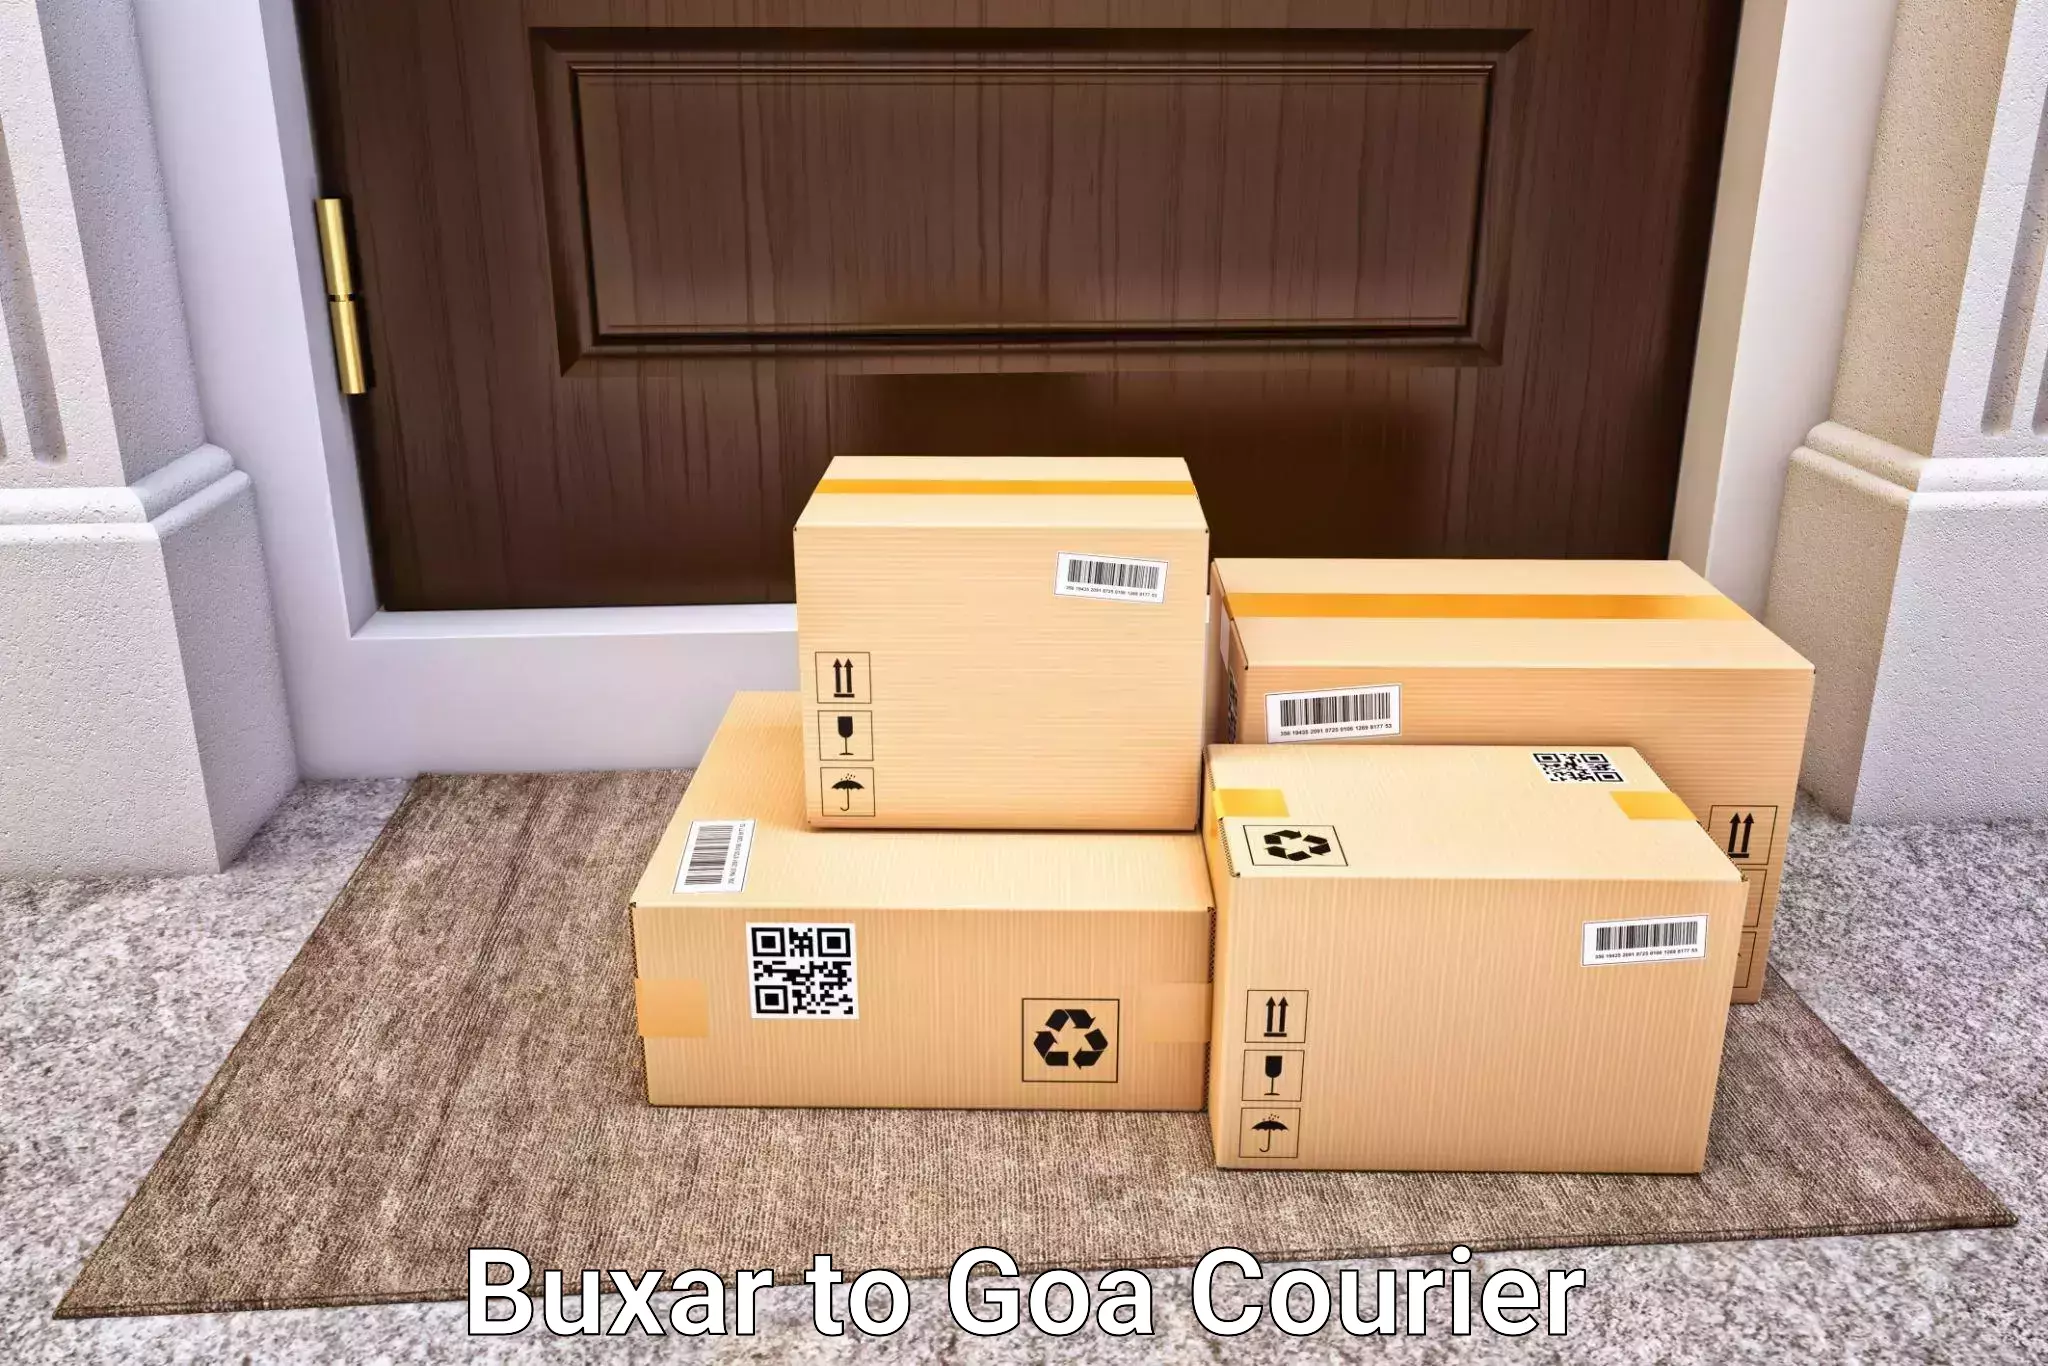 Door-to-door baggage service Buxar to South Goa